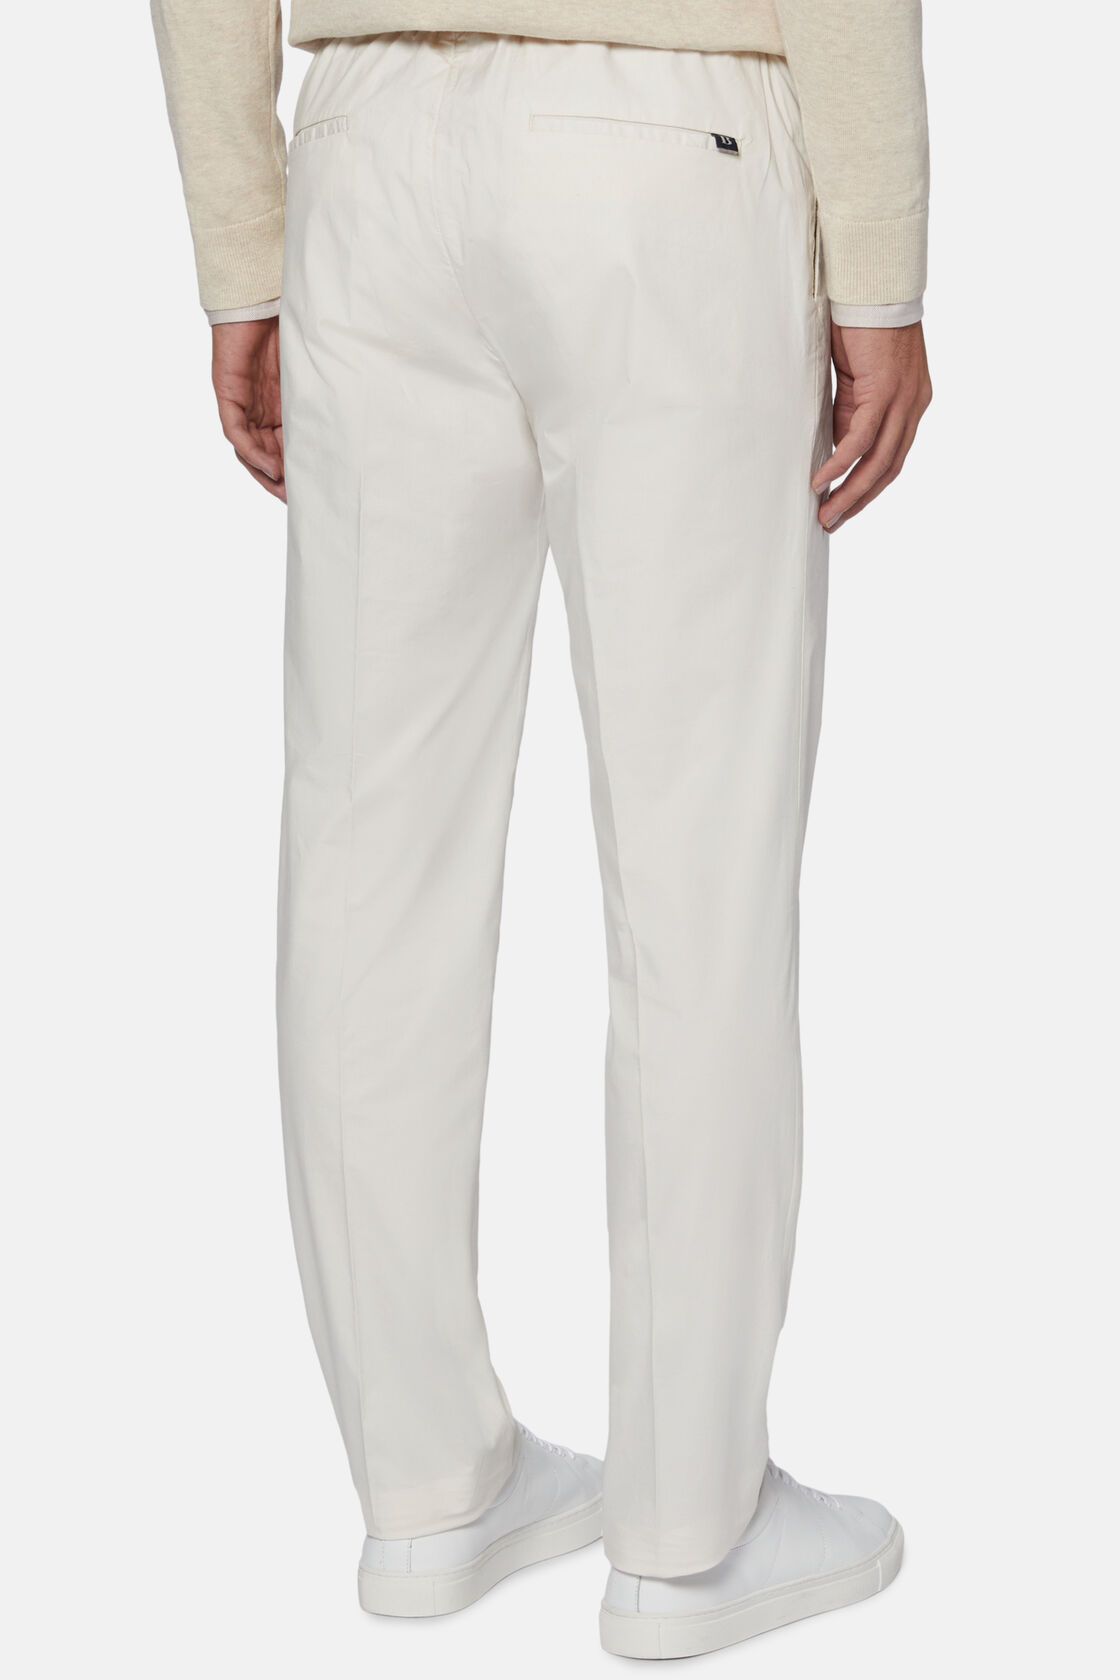 Pantalone in Cotone Elasticizzato con Pinces, Bianco, hi-res